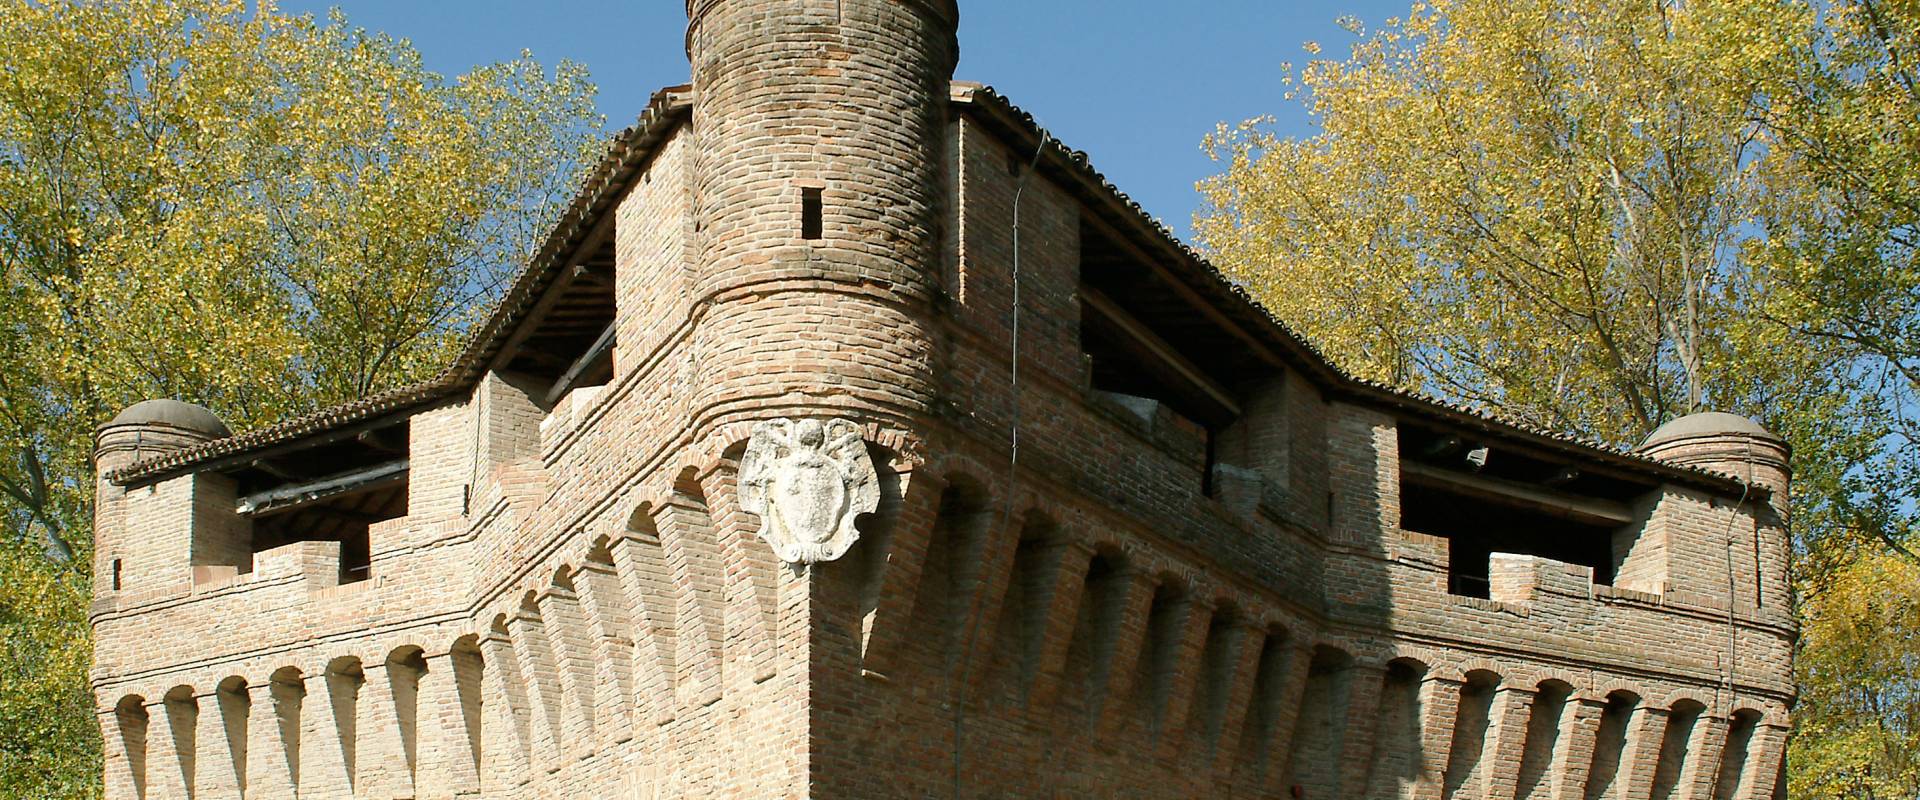 Stellata, Rocca Possente photo by Baraldi